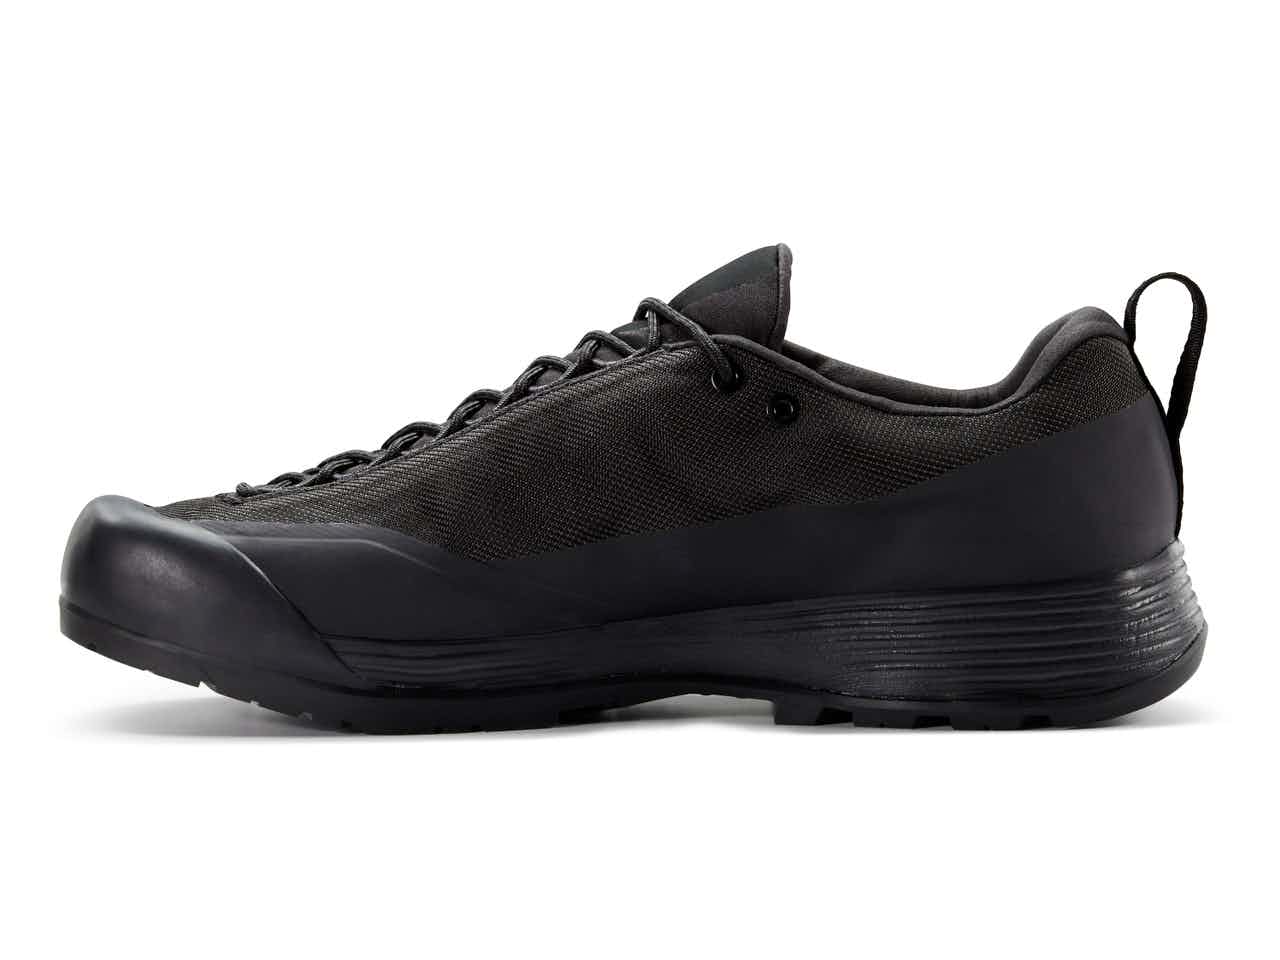 Chaussures d'approche Konseal FL 2 GORE-TEX Noir/Copie conforme